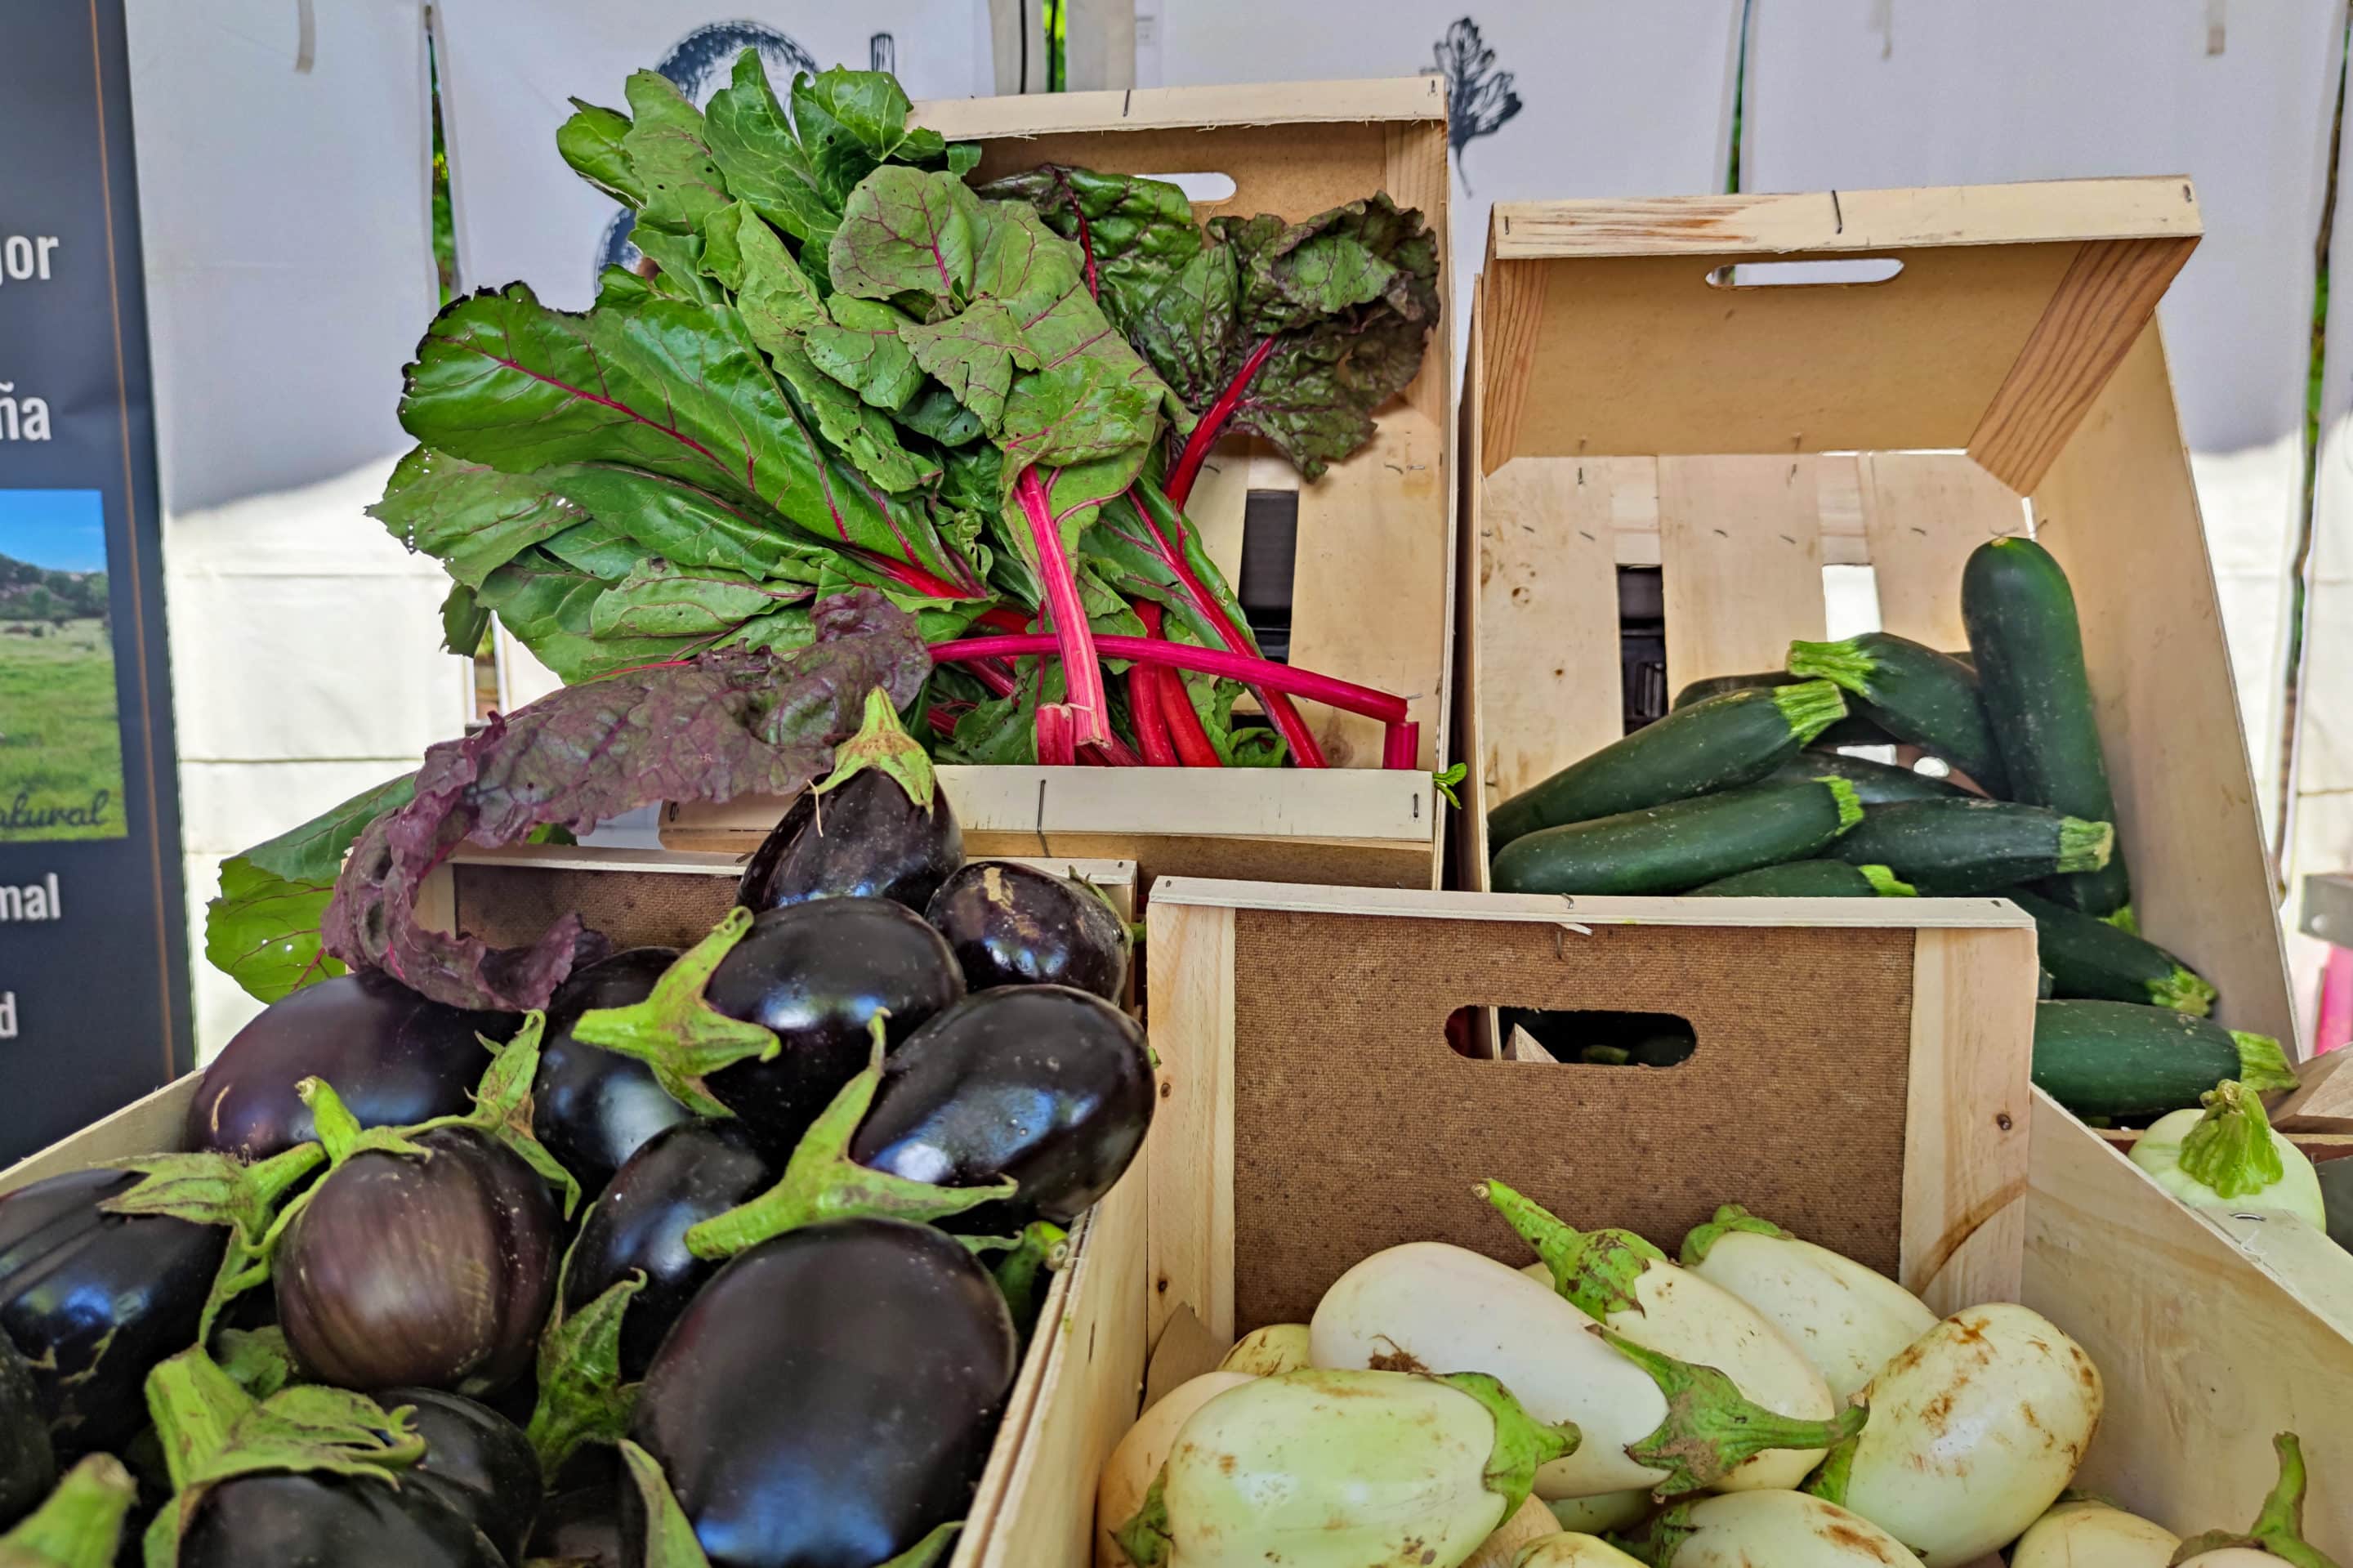 Verduras y hortalizas cultivadas en Rivas Vaciamadrid